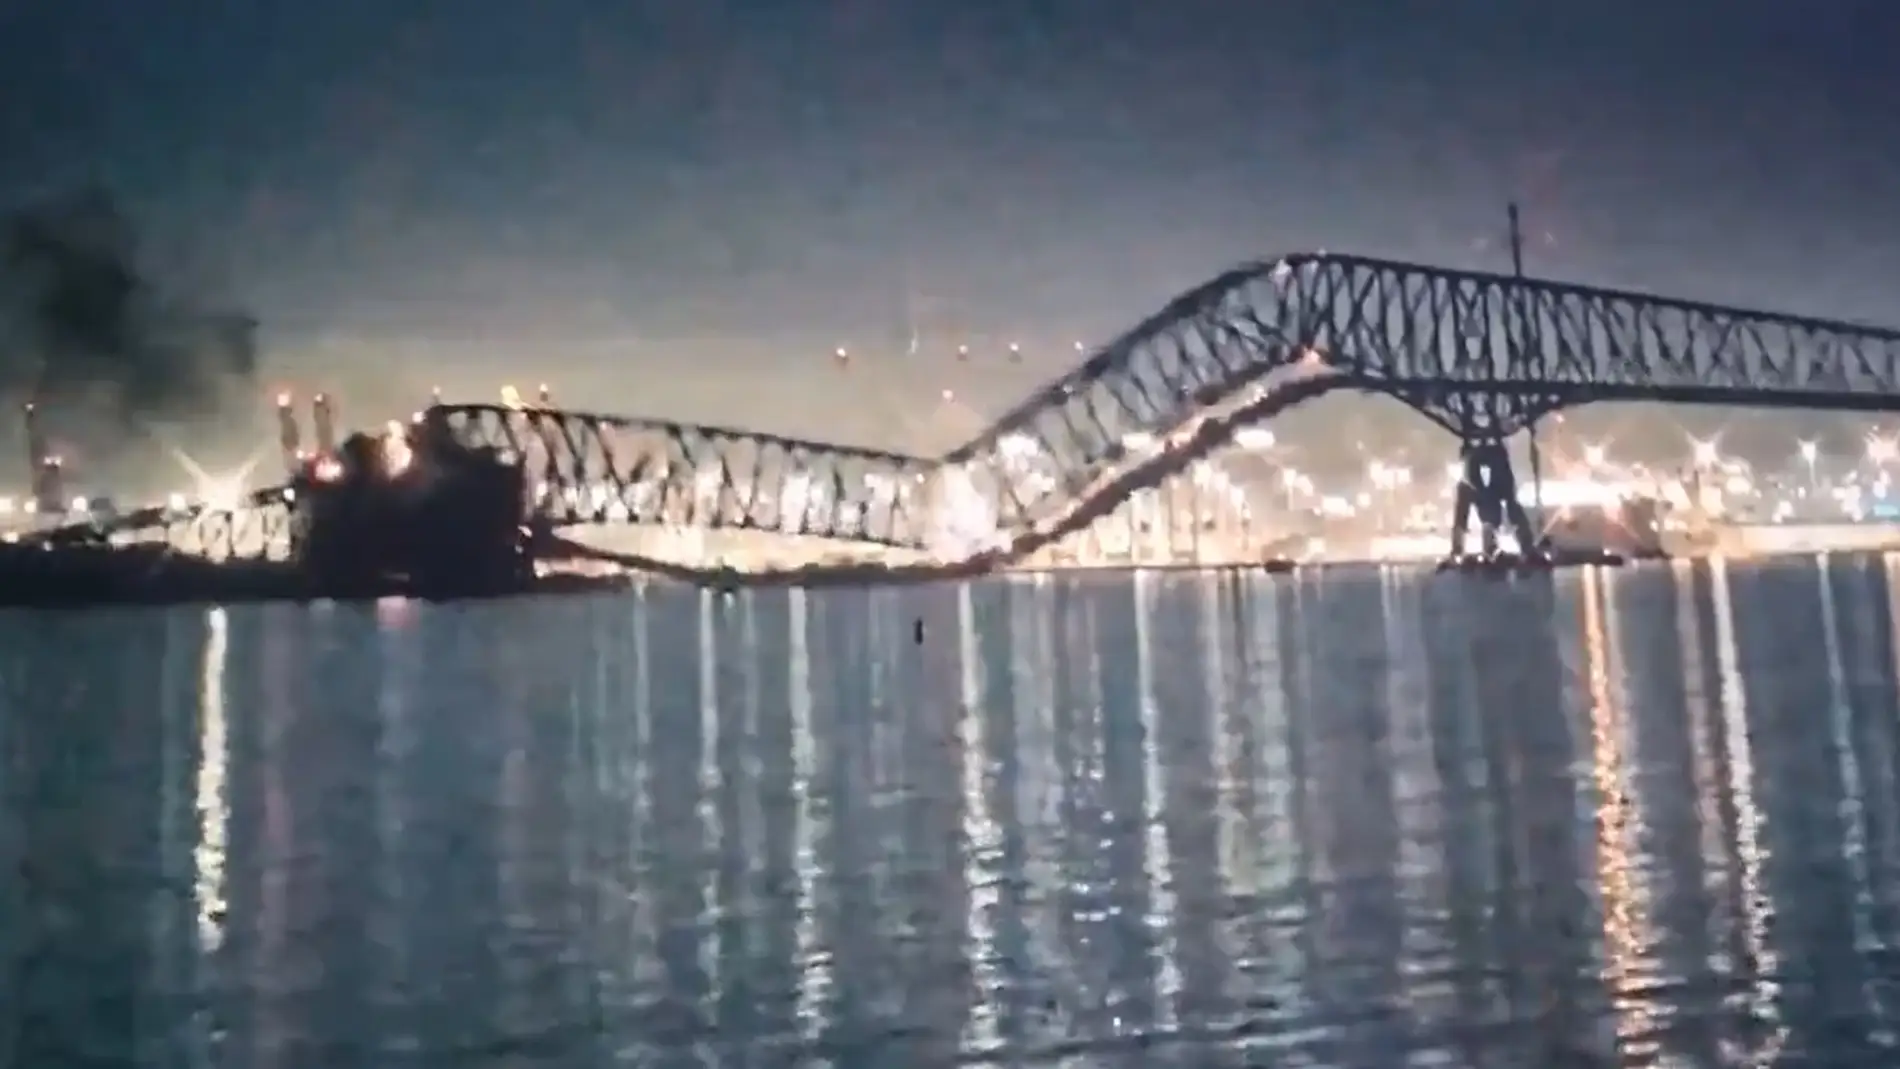 Un buque choca y derriba un puente en Baltimore mientras circulaban varias decenas de coches.